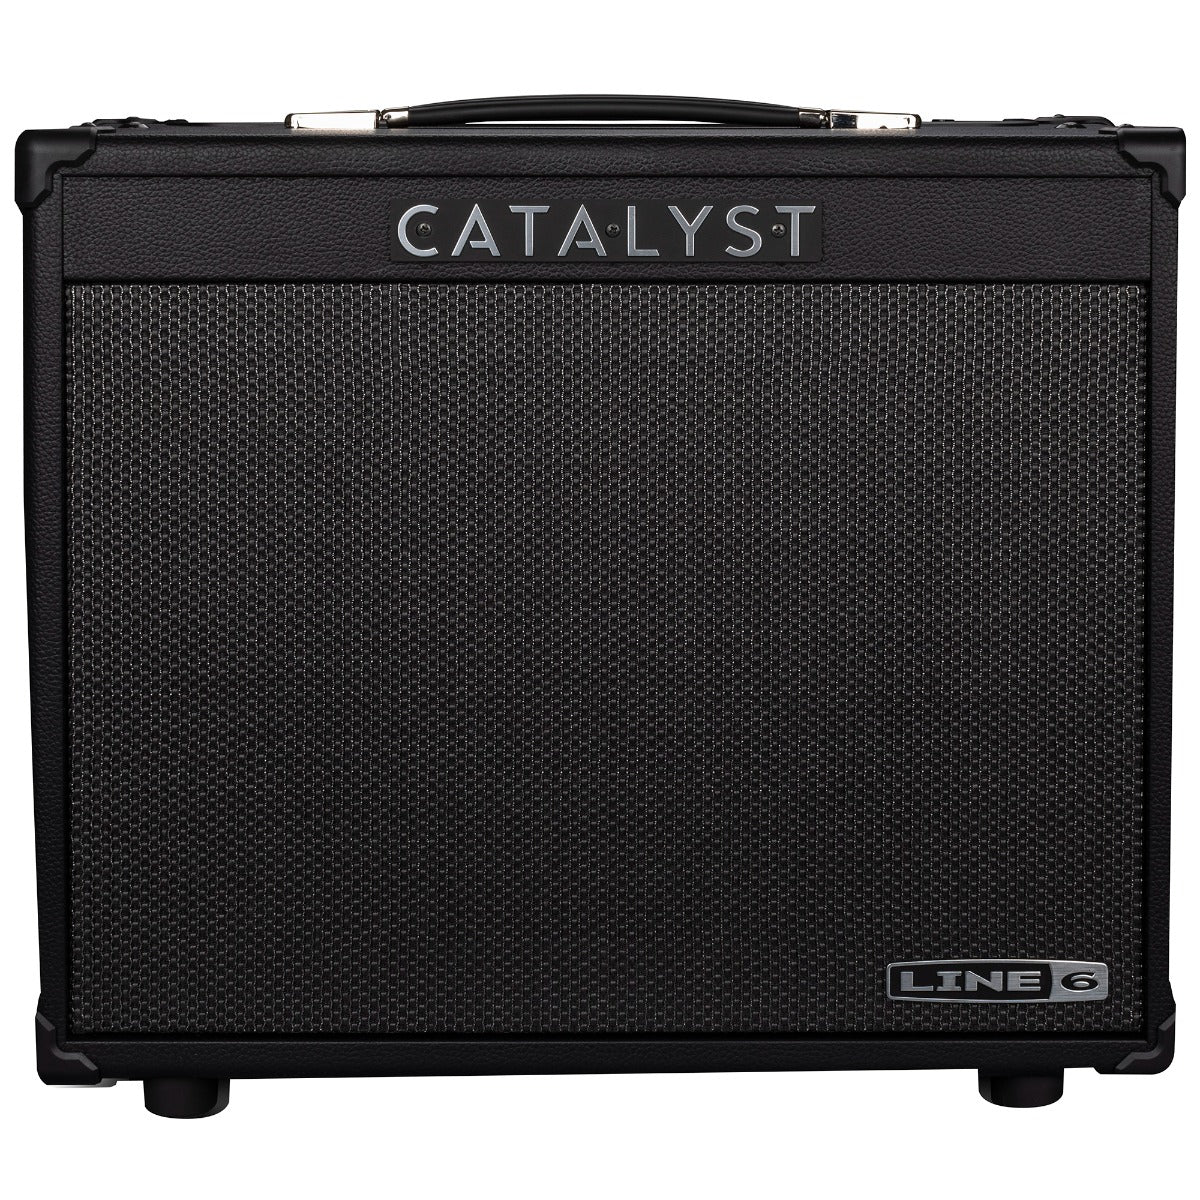 Line 6 Catalyst 60 1x12 Combo Guitar Amplifier view 2